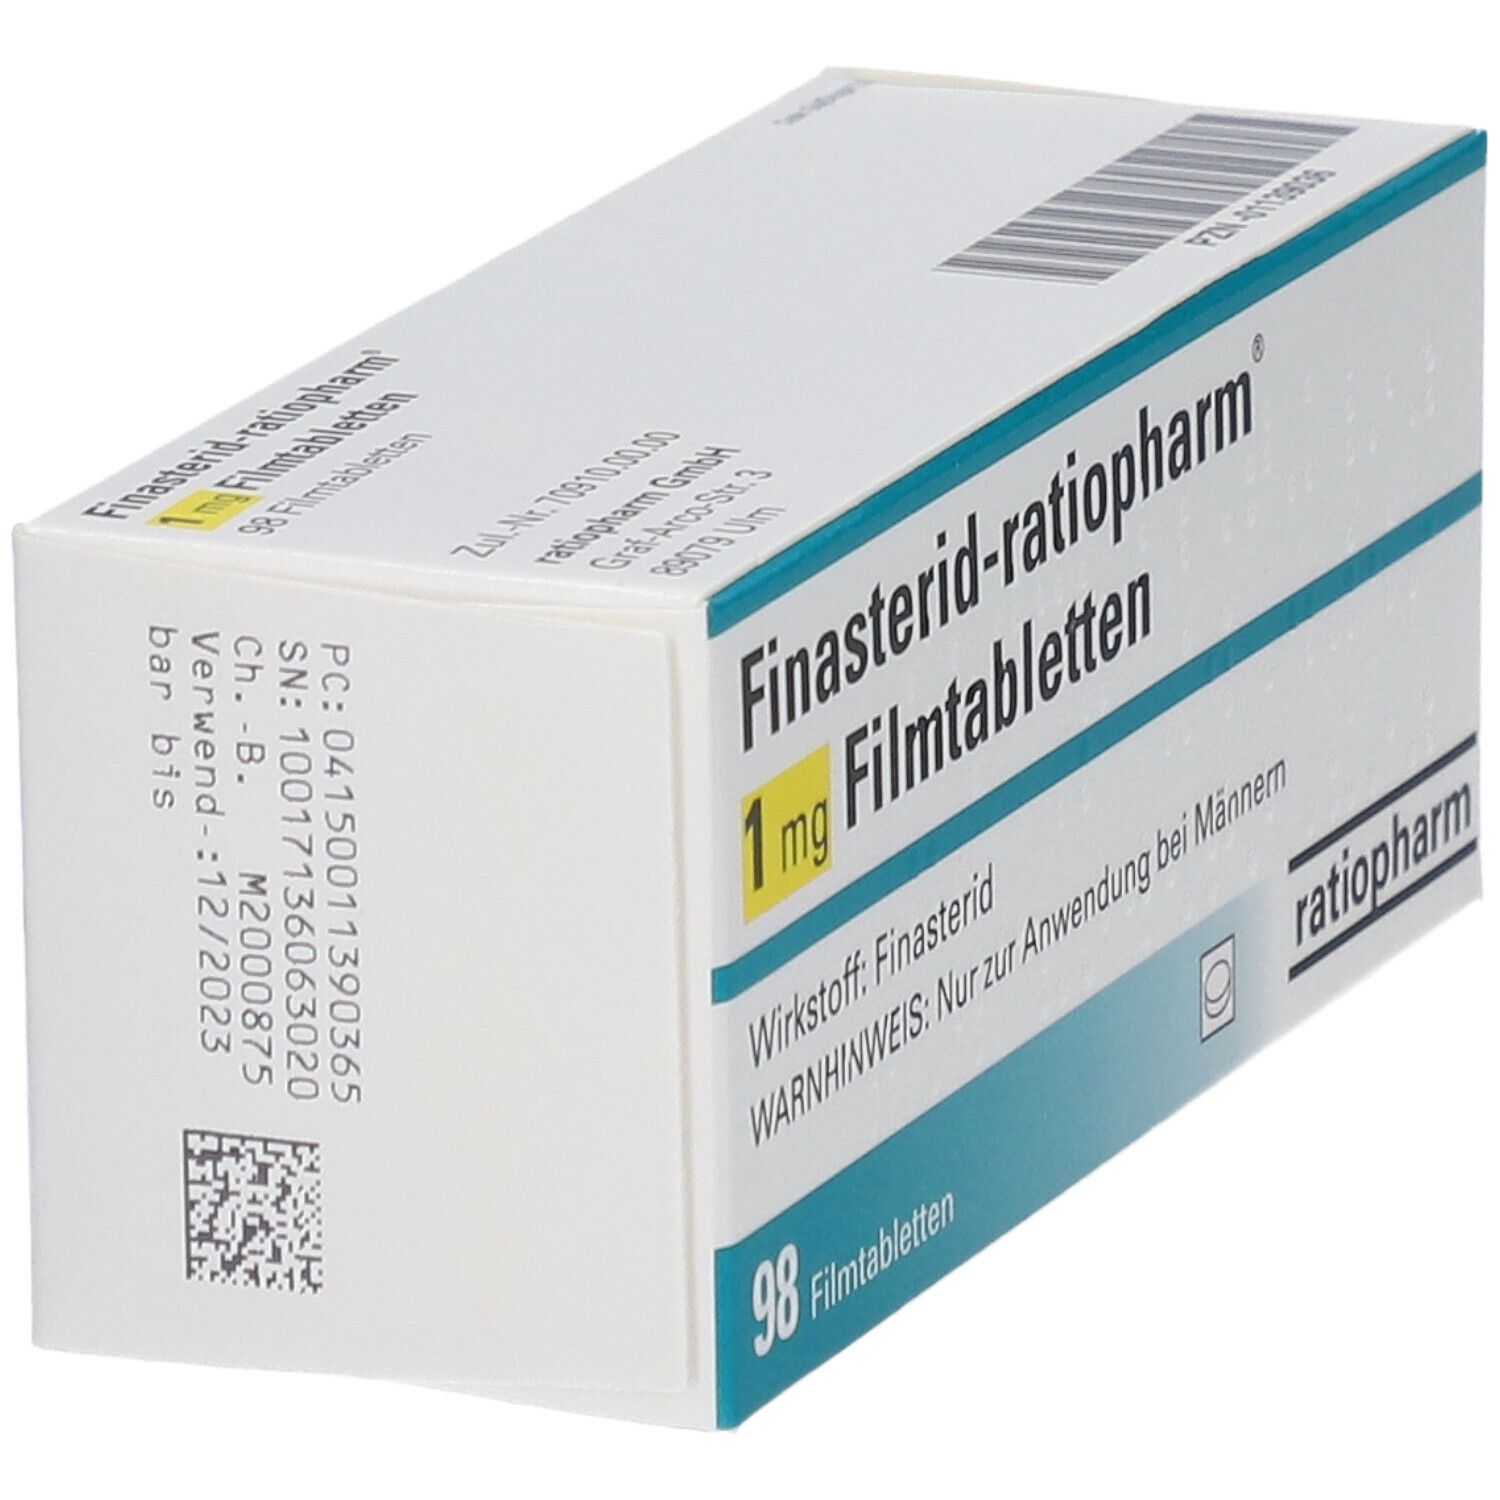 Finasterid-ratiopharm® 1 mg